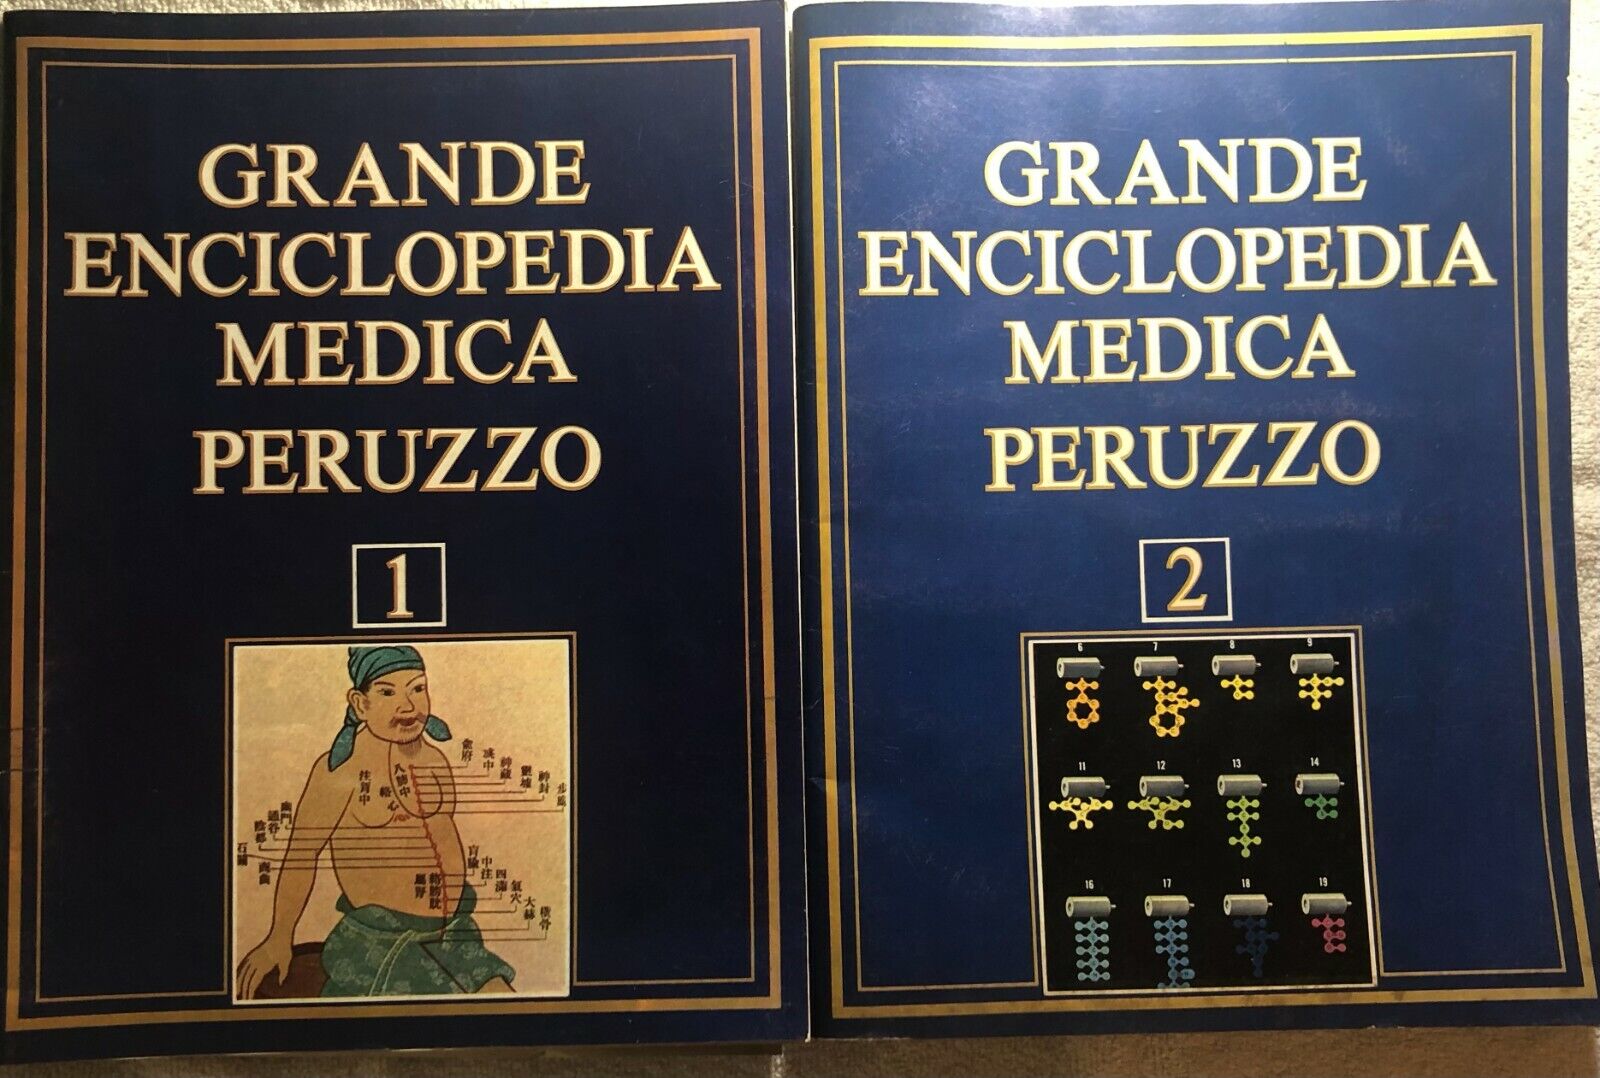 Grande enciclopedia medica Peruzzo 1-2 di Aa.vv.,  1976,  Alberto Peruzzo Editor